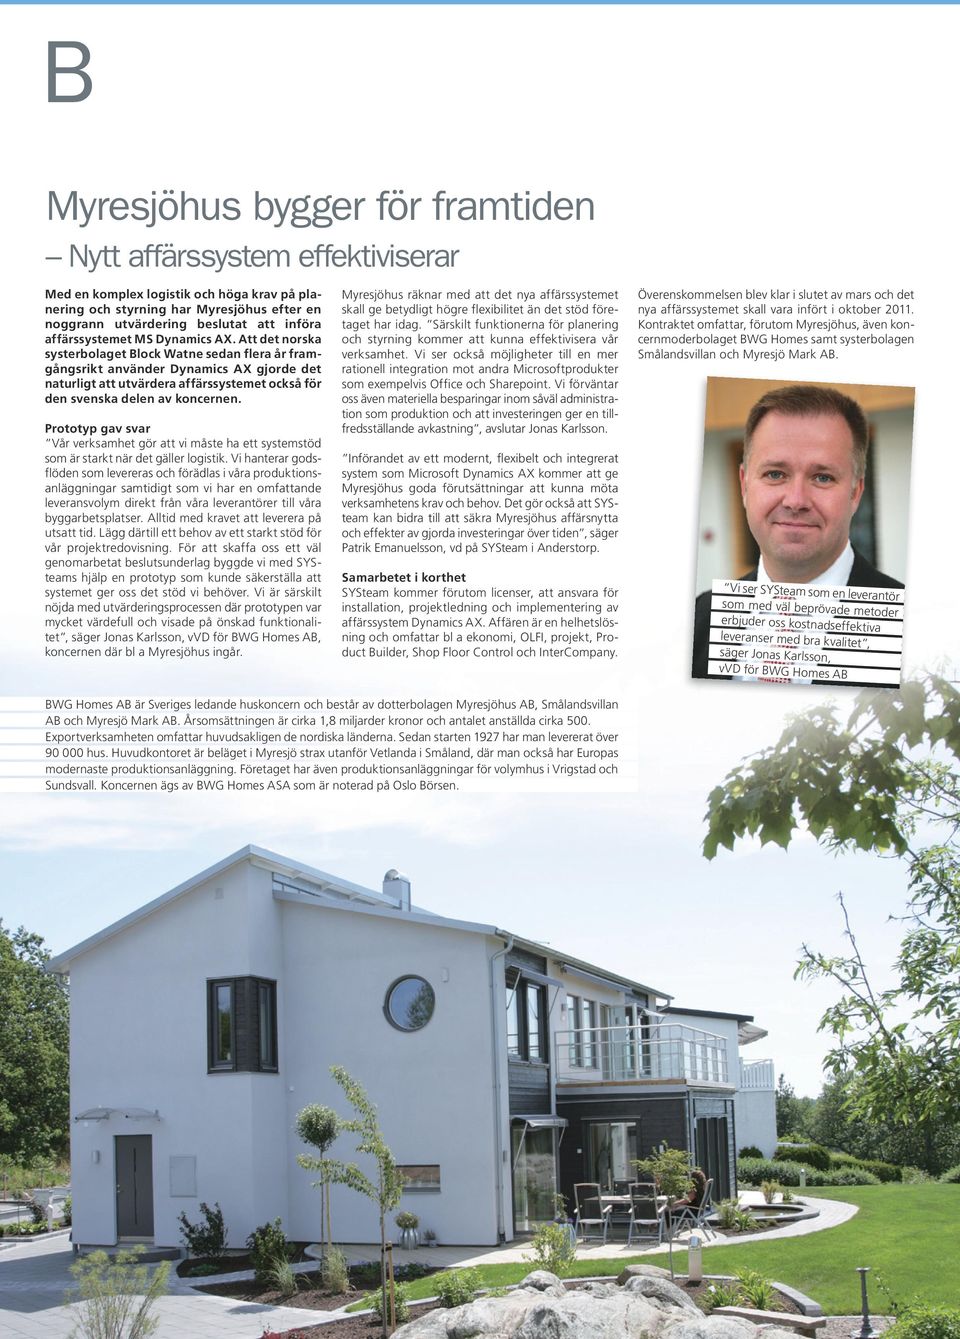 Att det norska systerbolaget Block Watne sedan flera år framgångsrikt använder Dynamics AX gjorde det naturligt att utvärdera affärssystemet också för den svenska delen av koncernen.